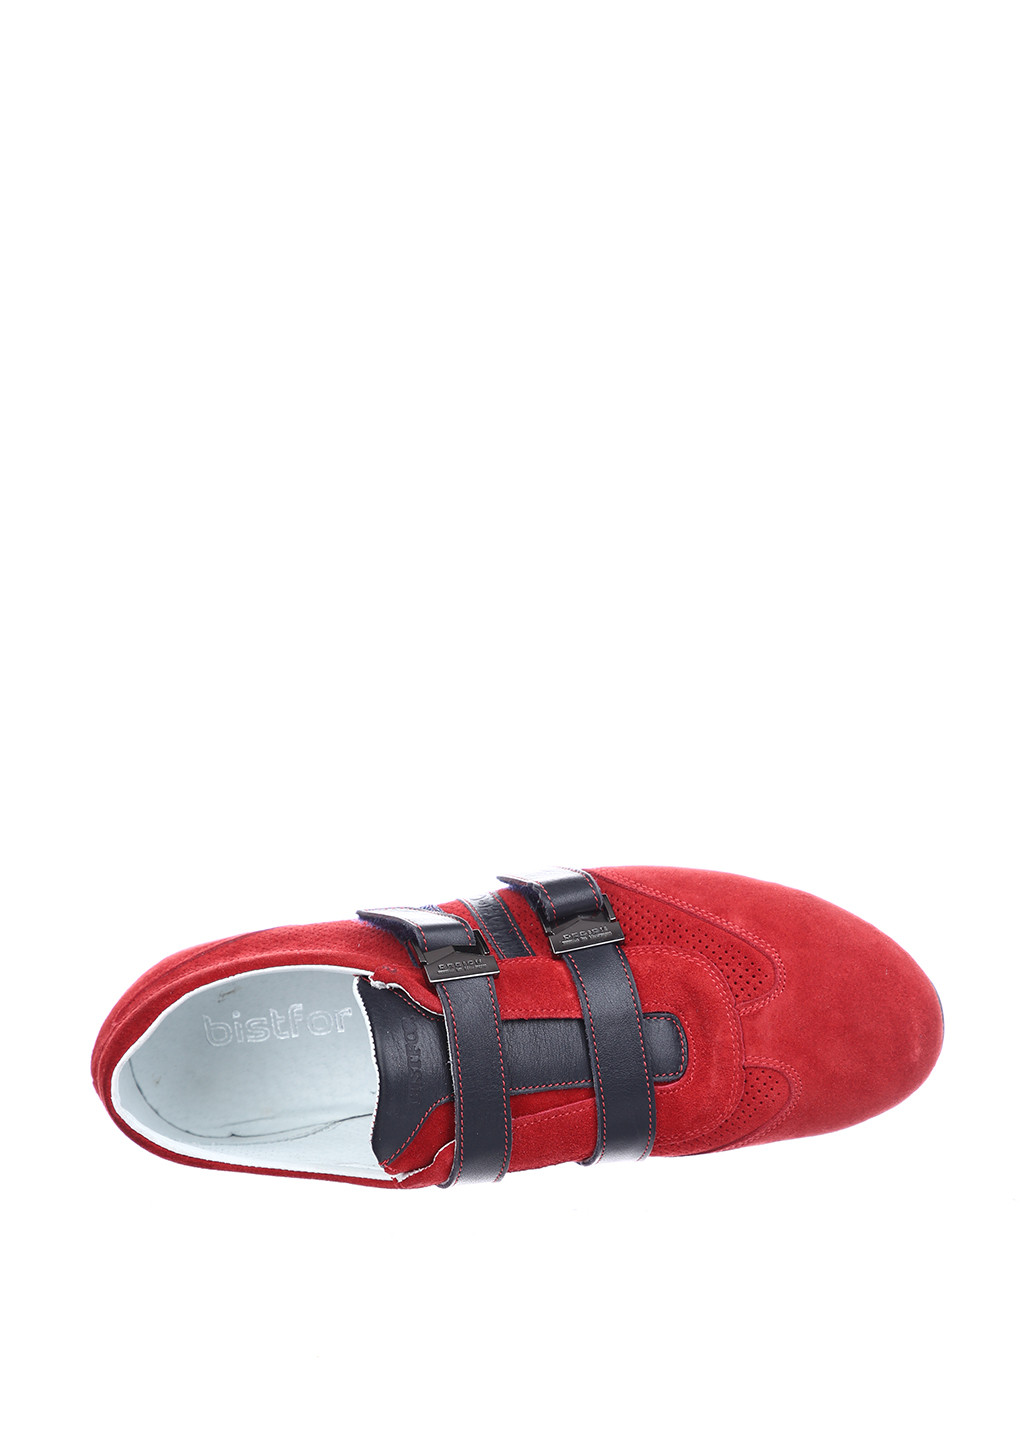 Красные спортивные туфли Bistfor на липучке